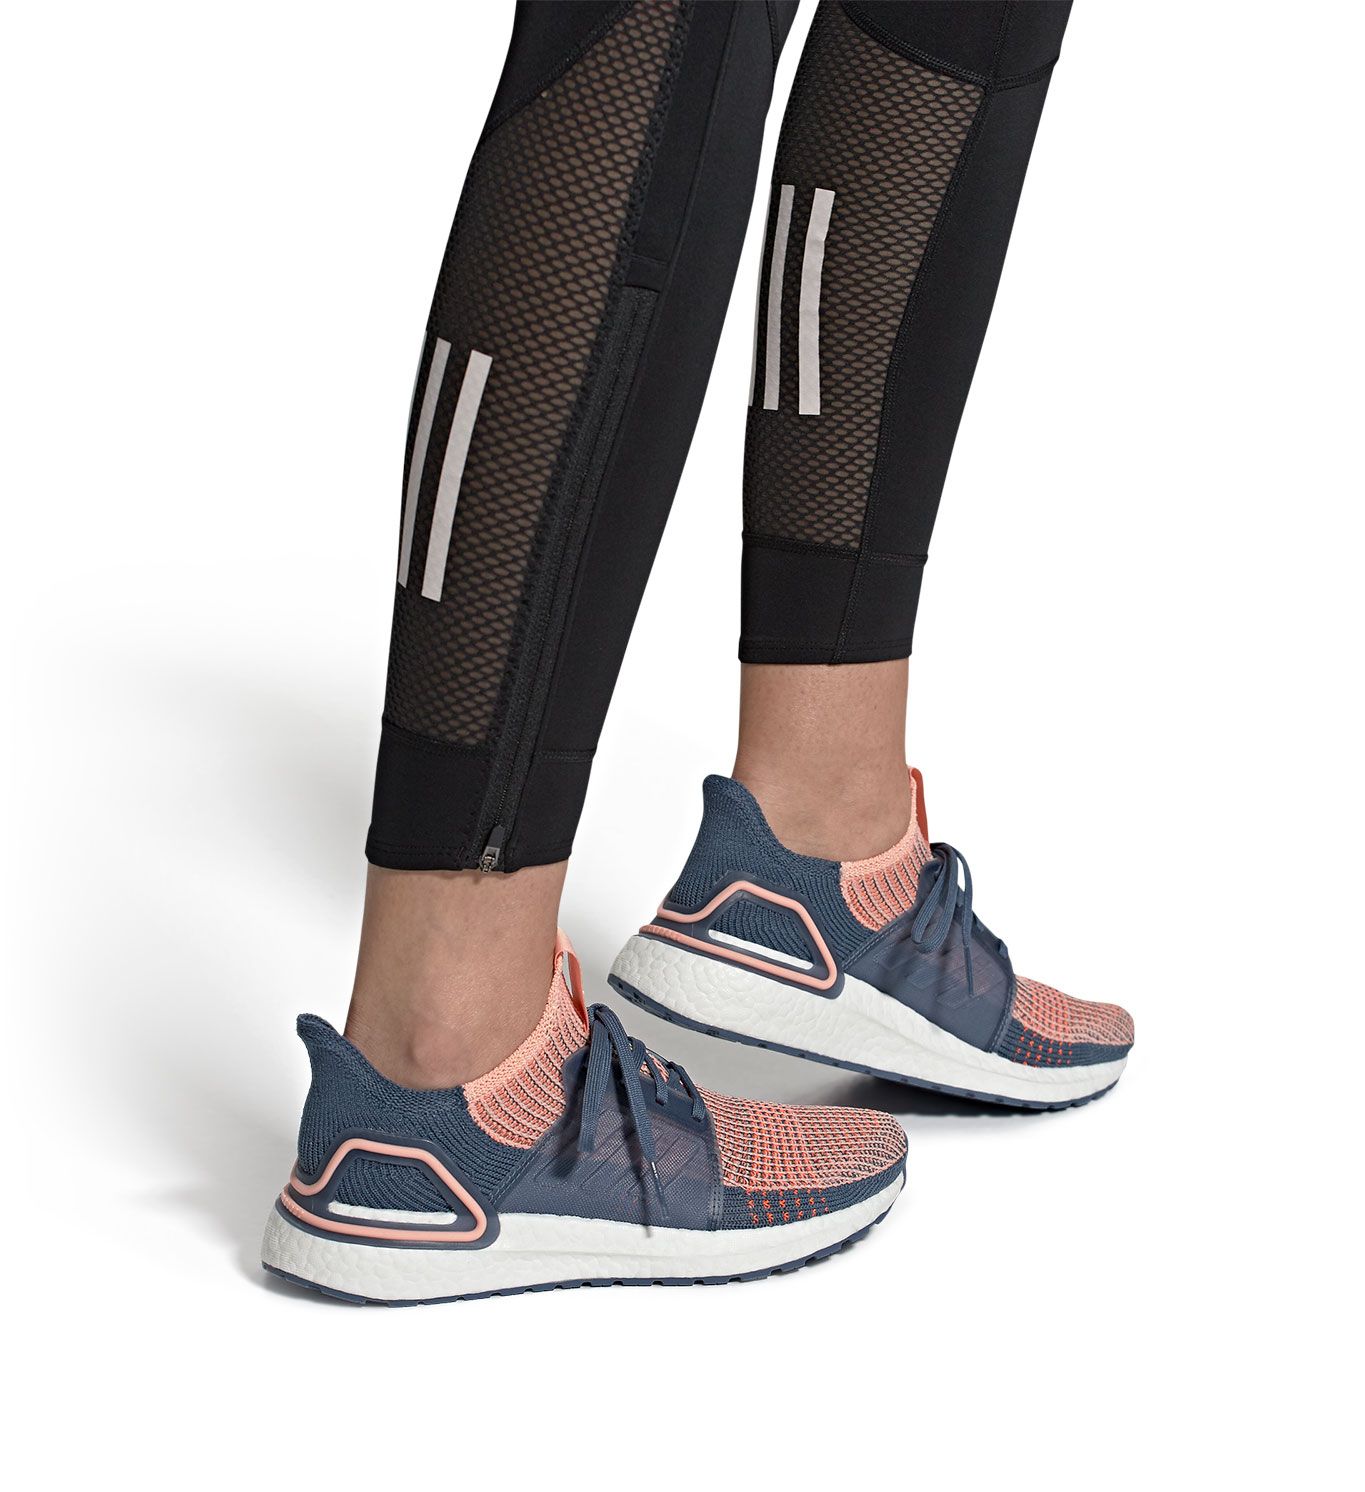 women's adidas ultraboost 19 running shoes